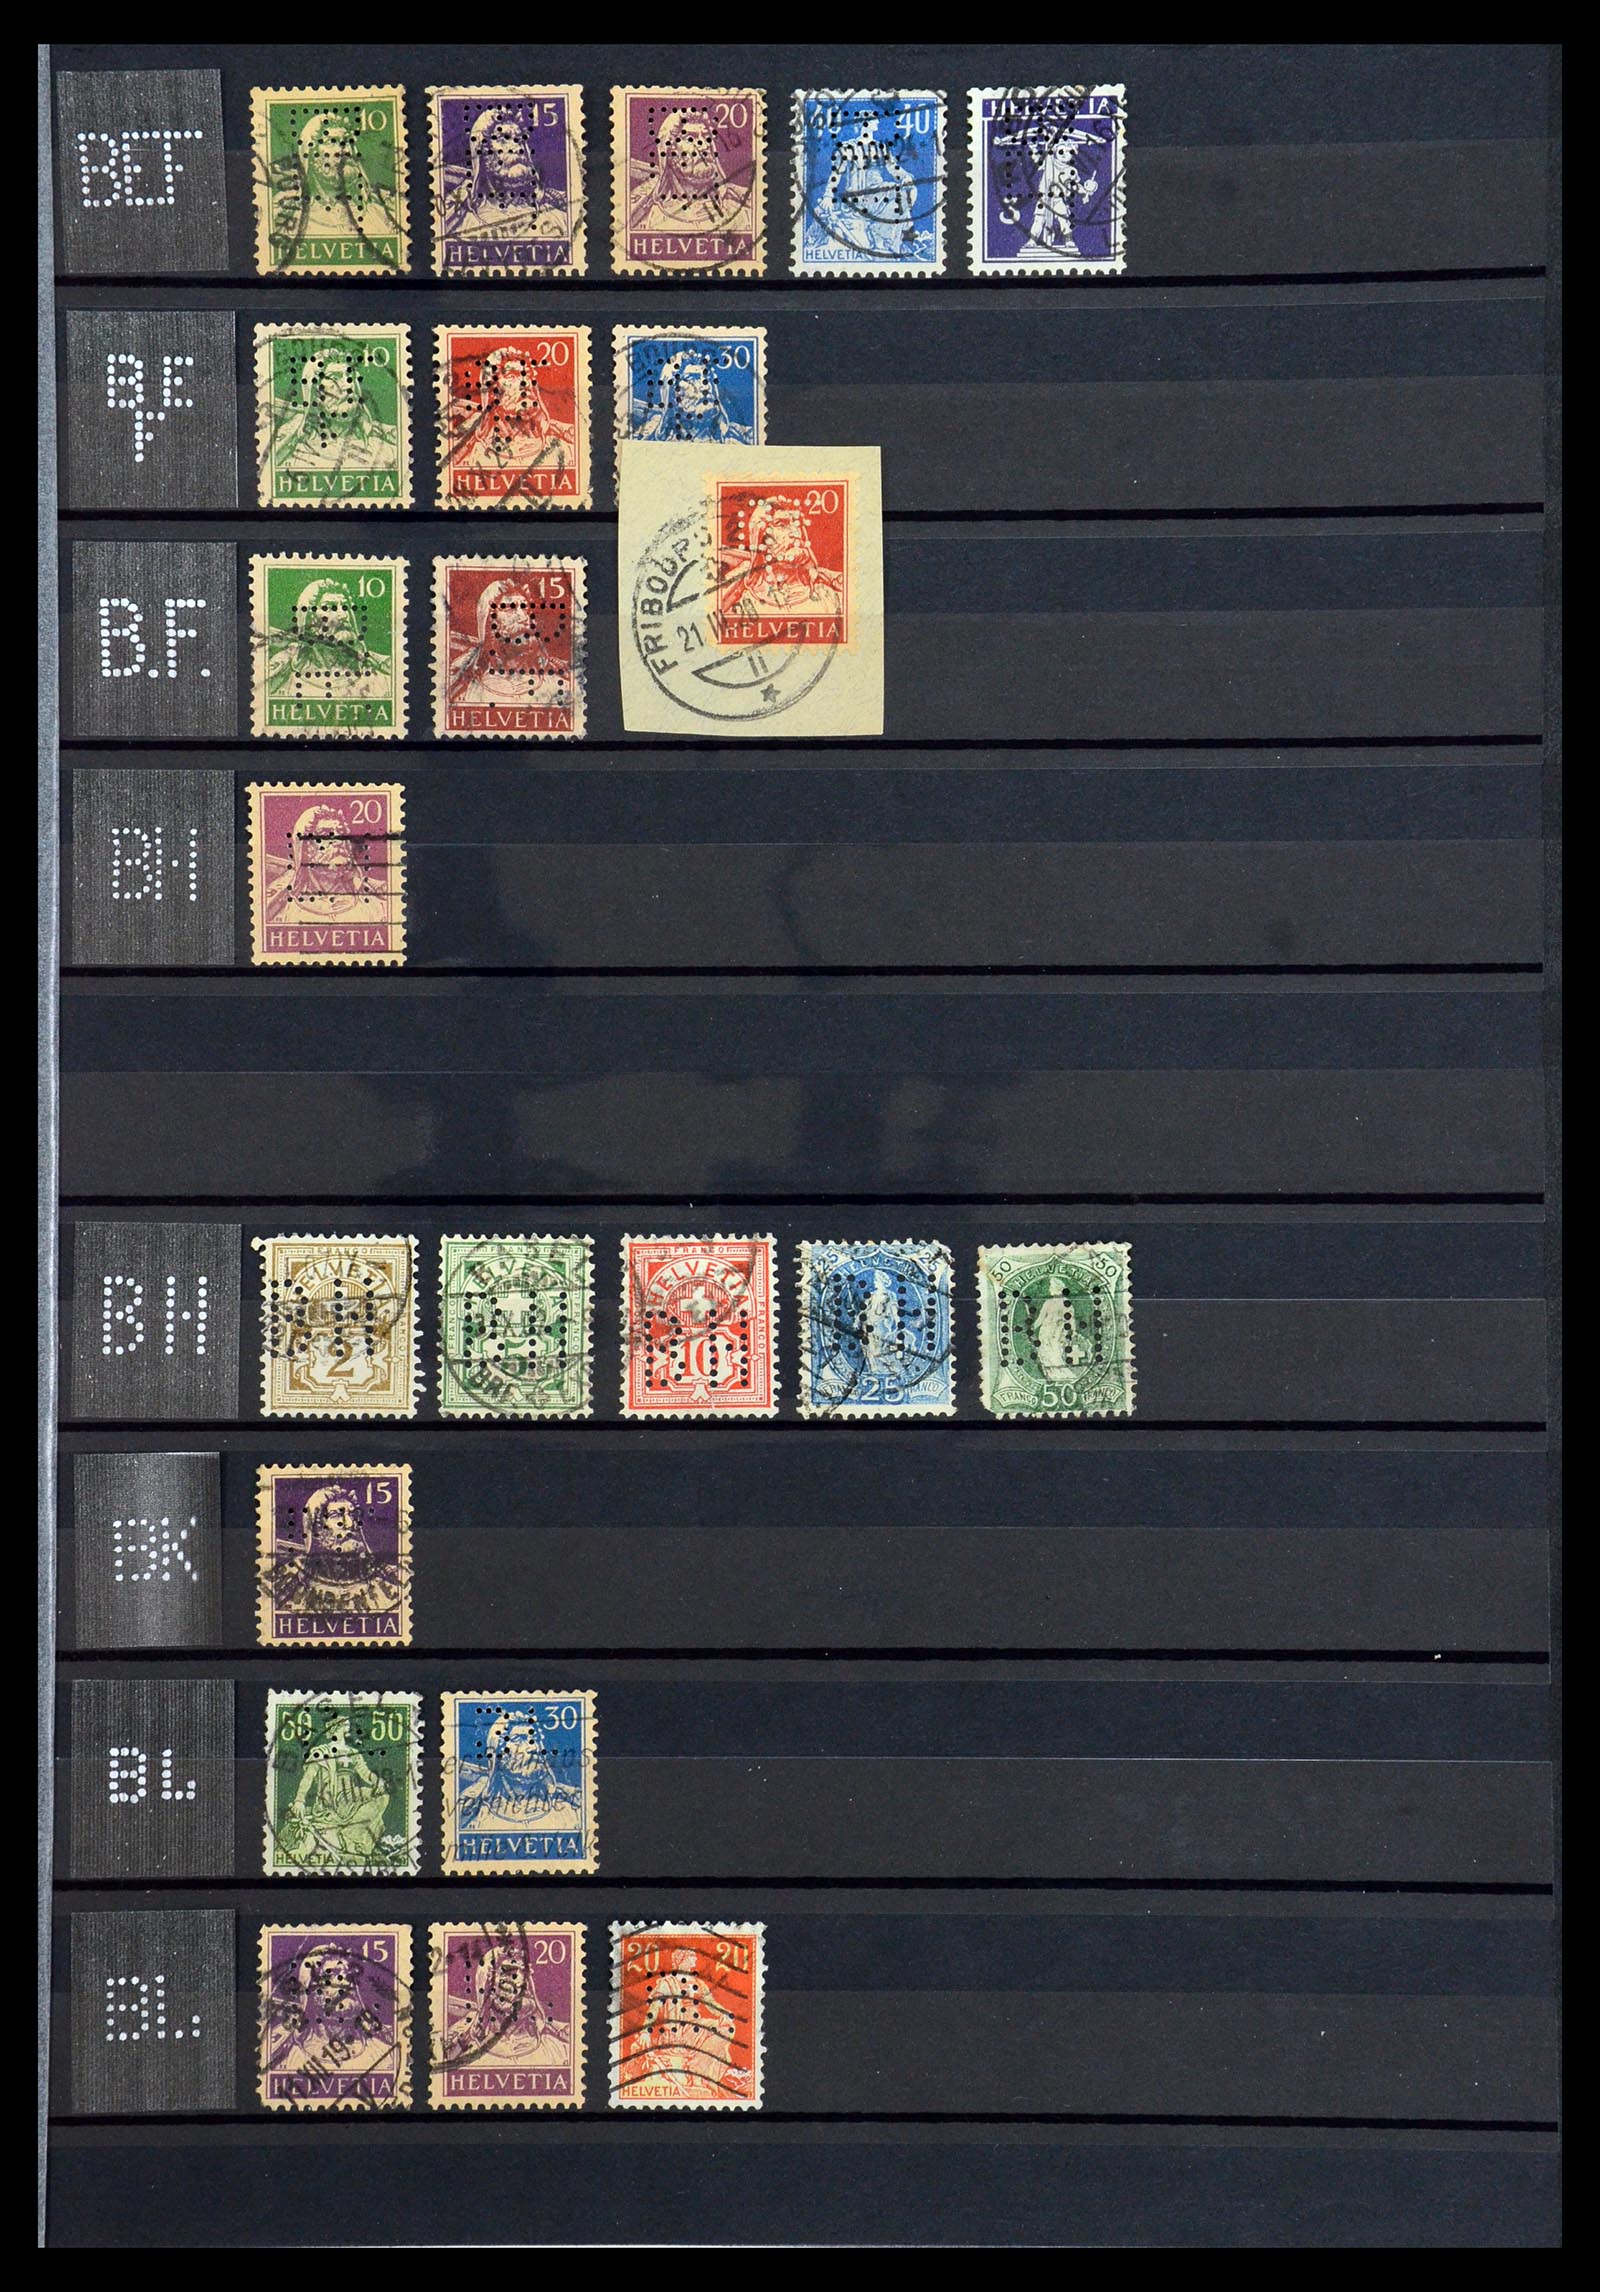 36372 005 - Stamp collection 36372 Switzerland perfins 1880-1960.